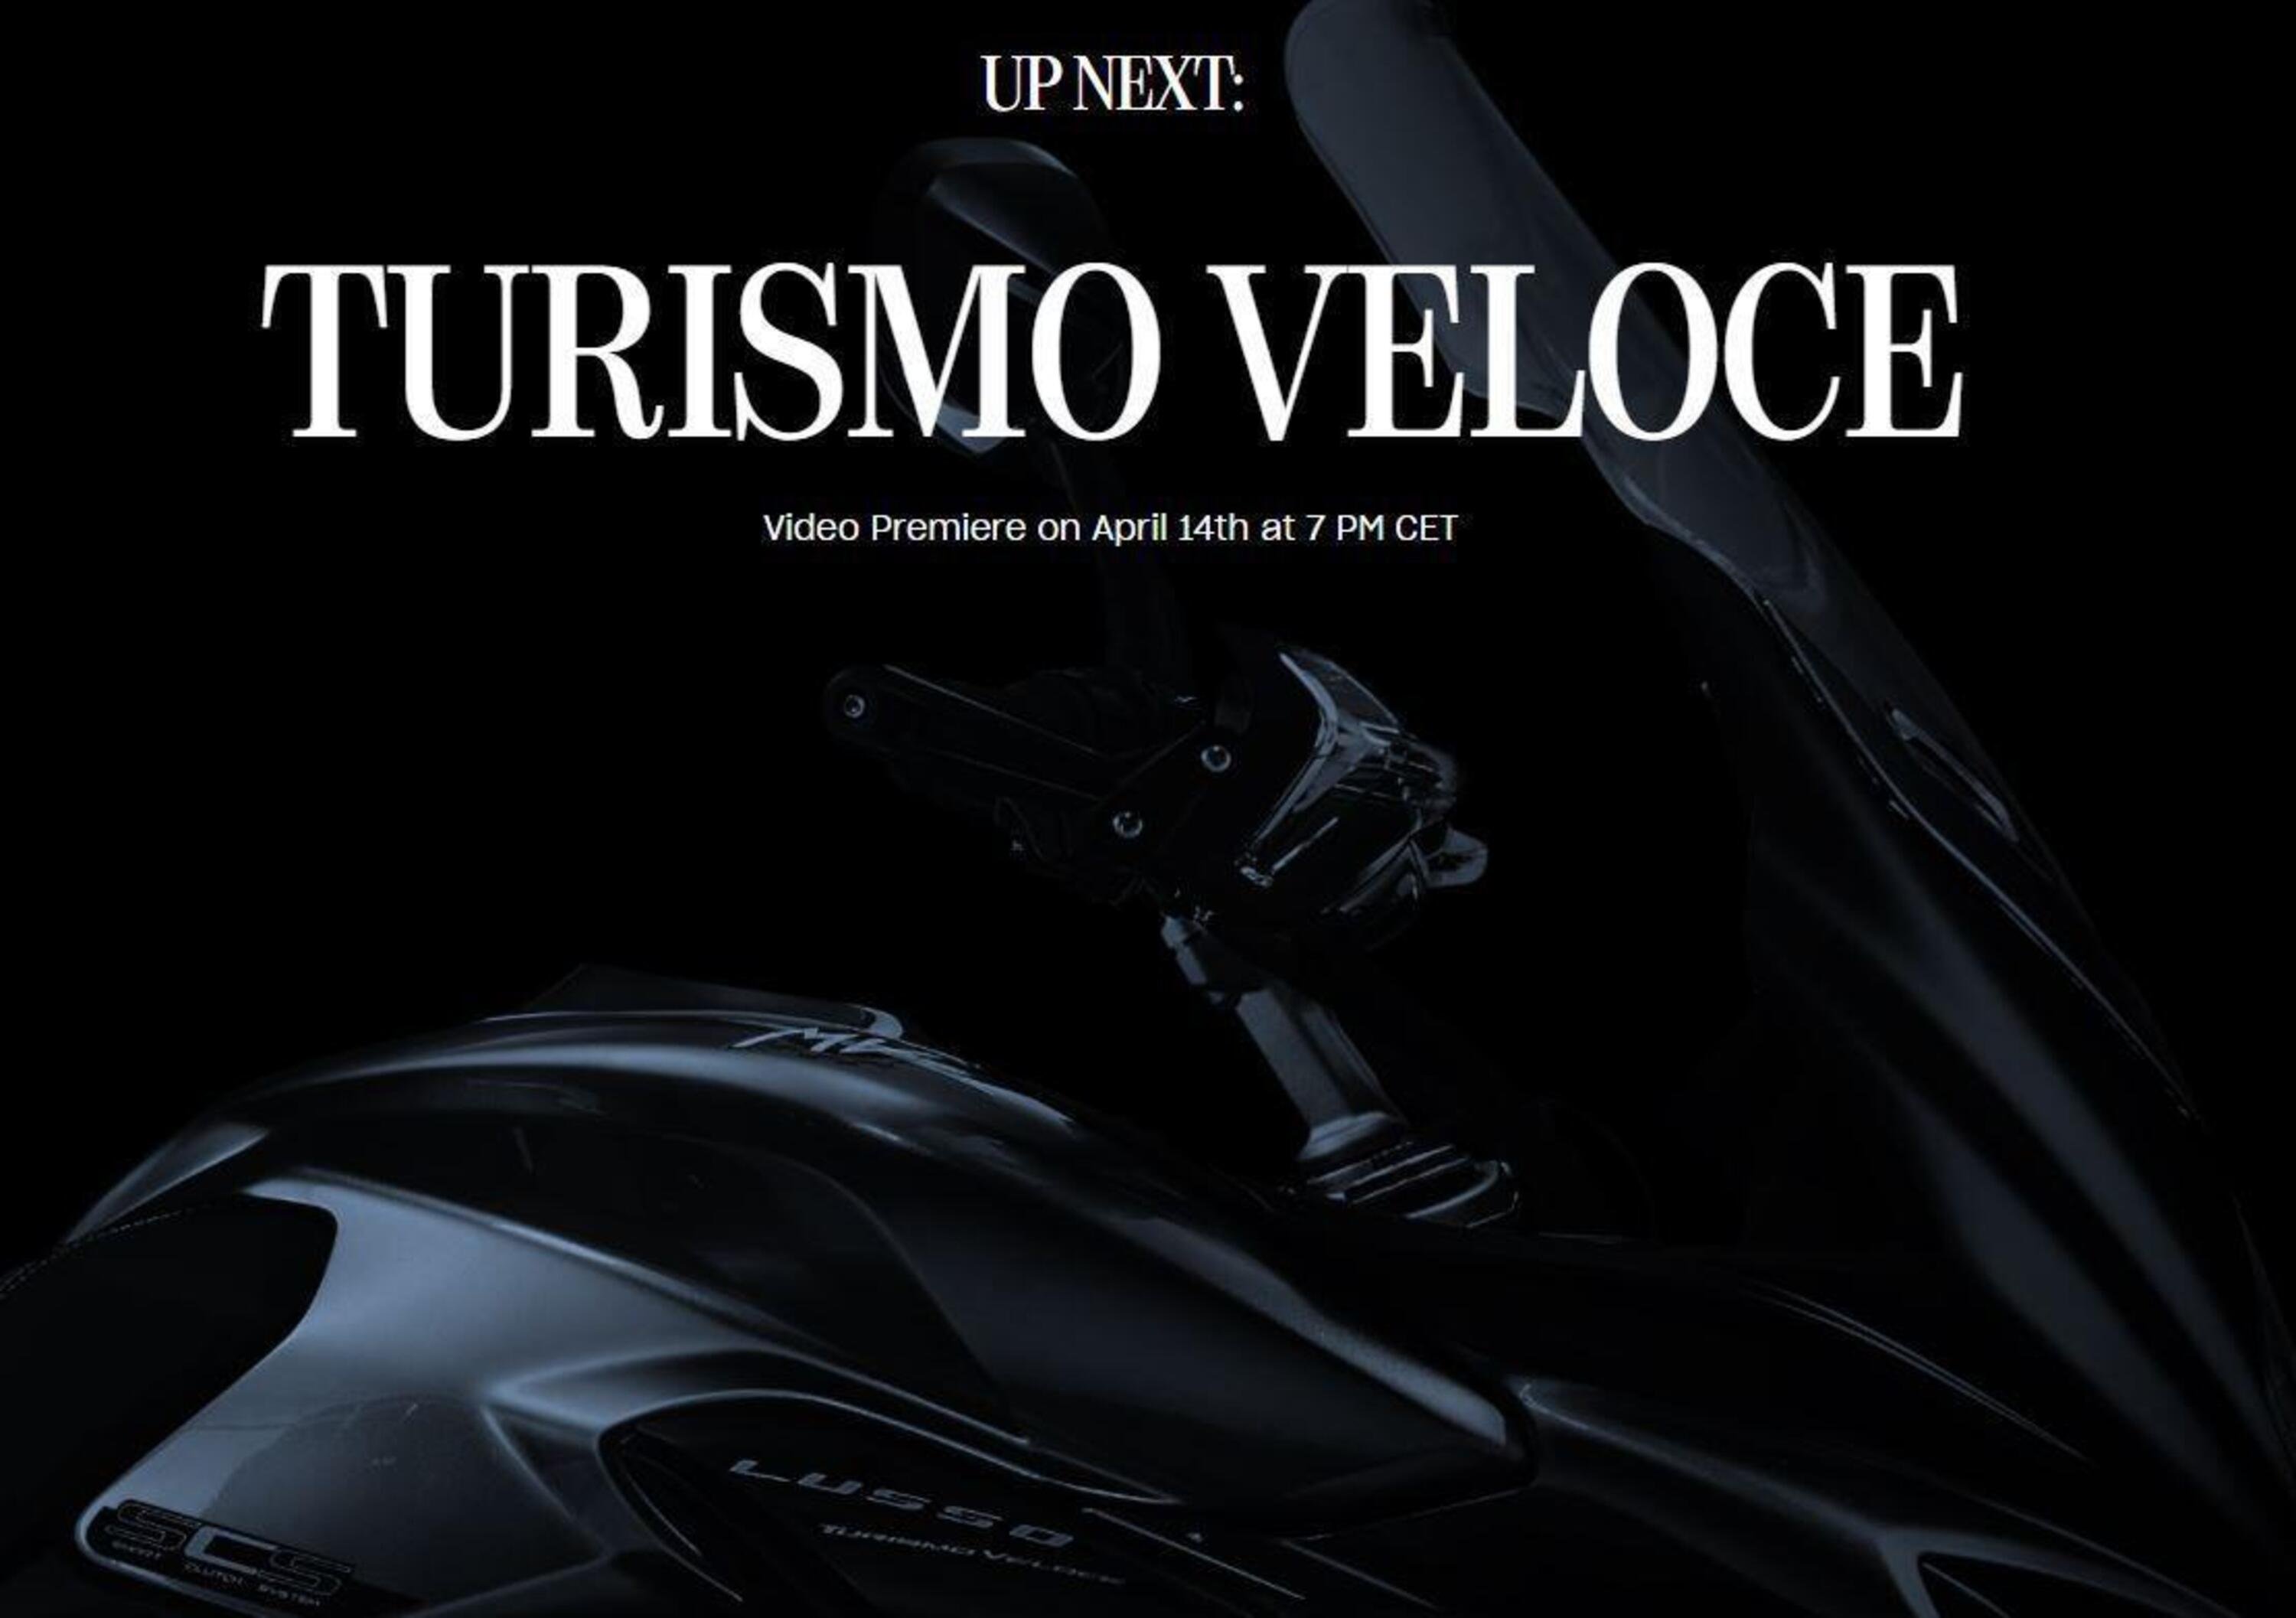 MV Agusta Turismo Veloce 800 m.y. 2021. La presentazione il 14 aprile